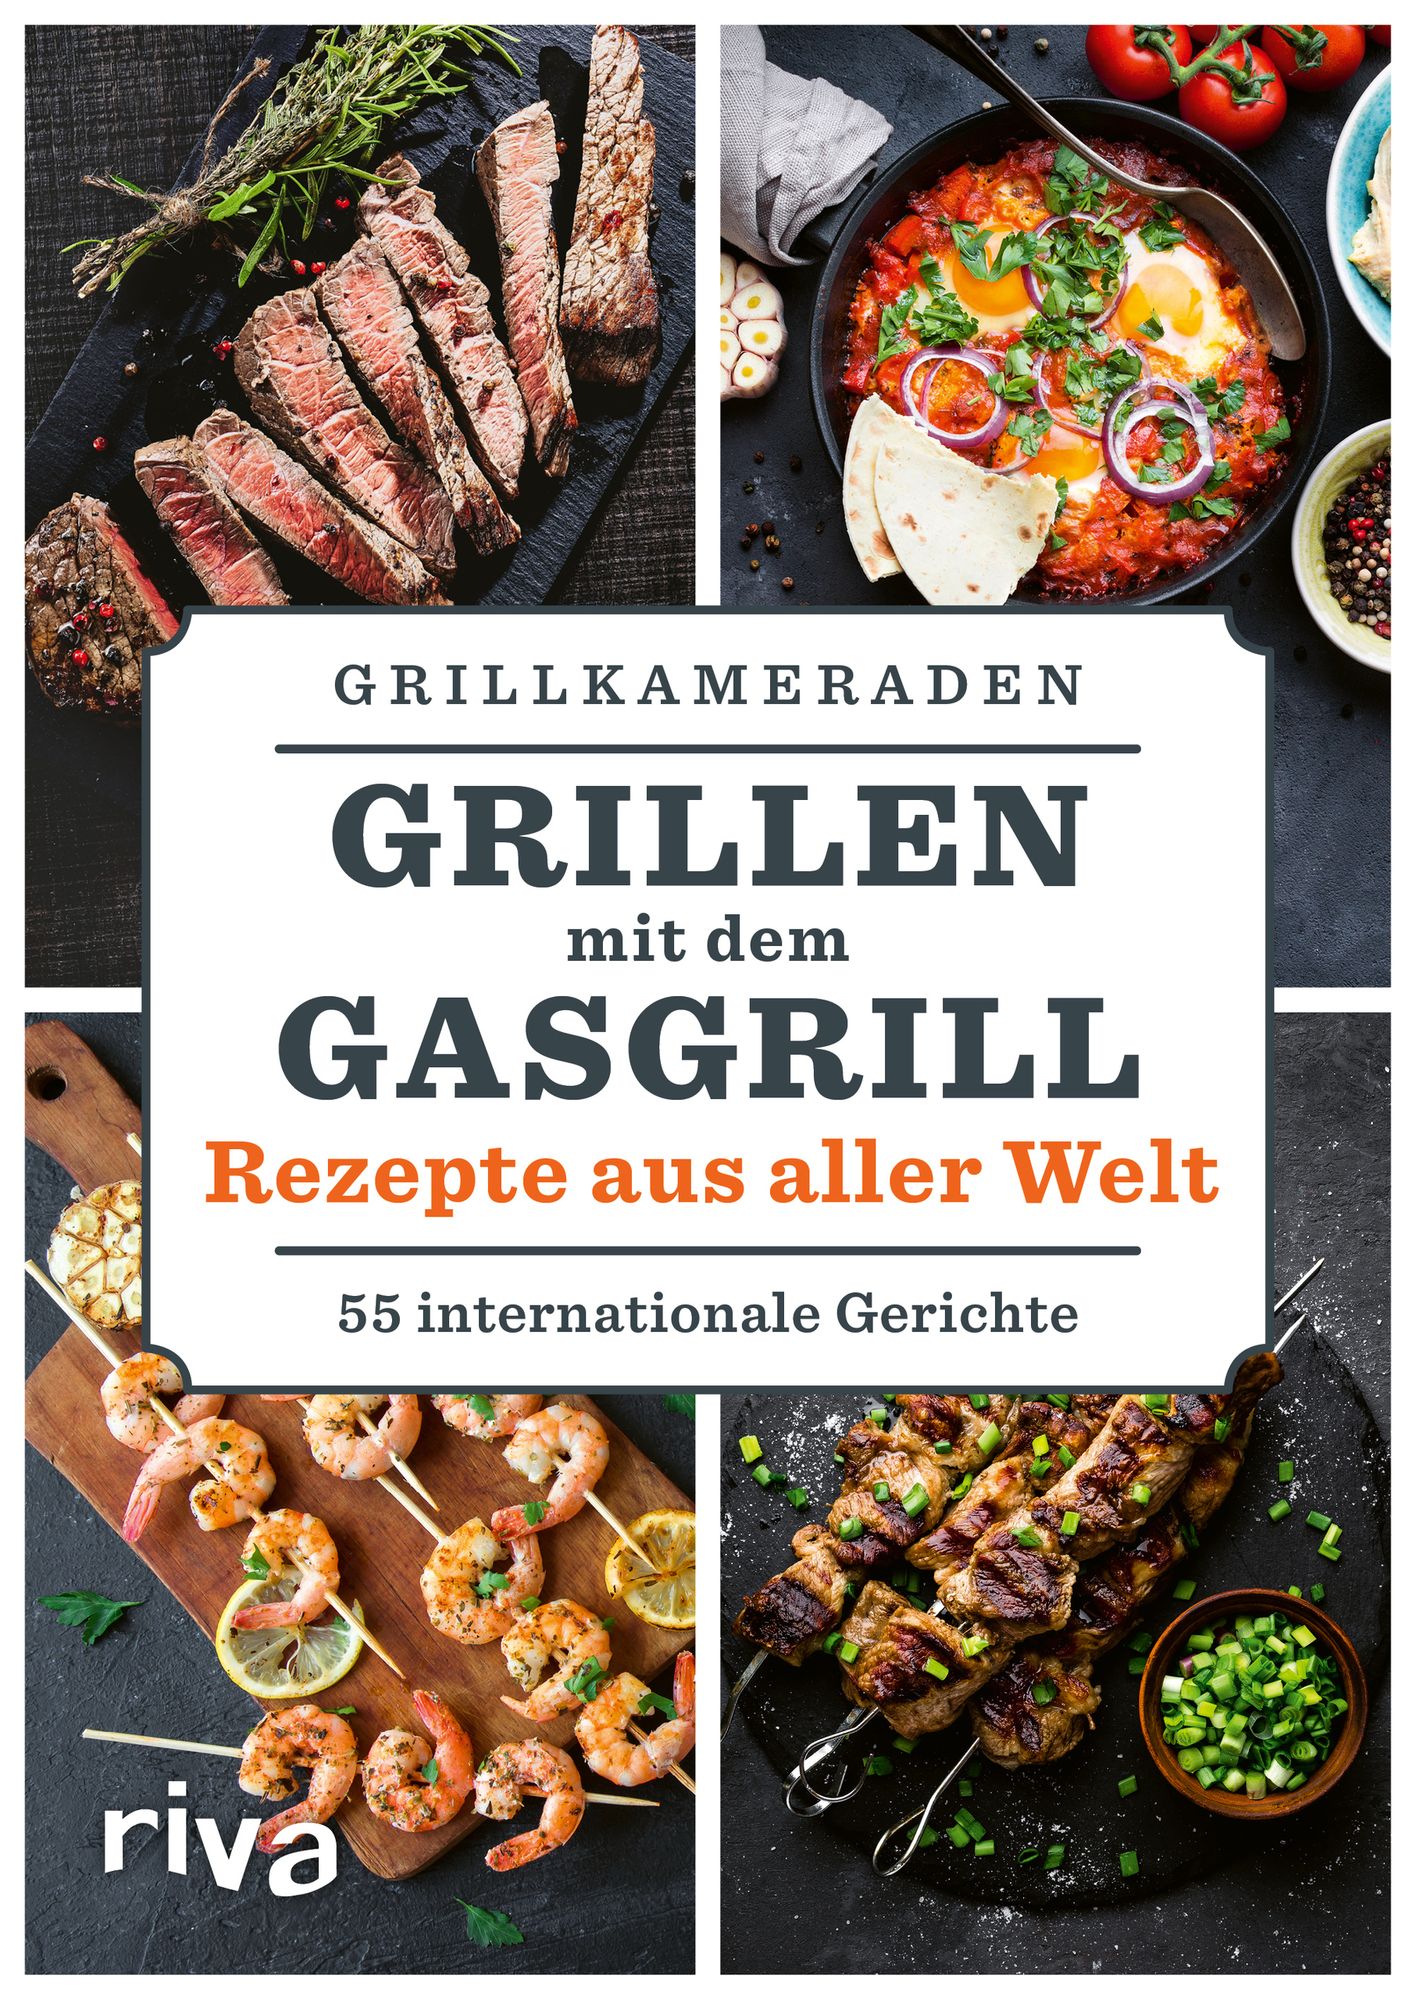 Grillen dem Gasgrill – Rezepte aus Welt' 'Grillkameraden' - Buch - '978-3-7423-1749-0'